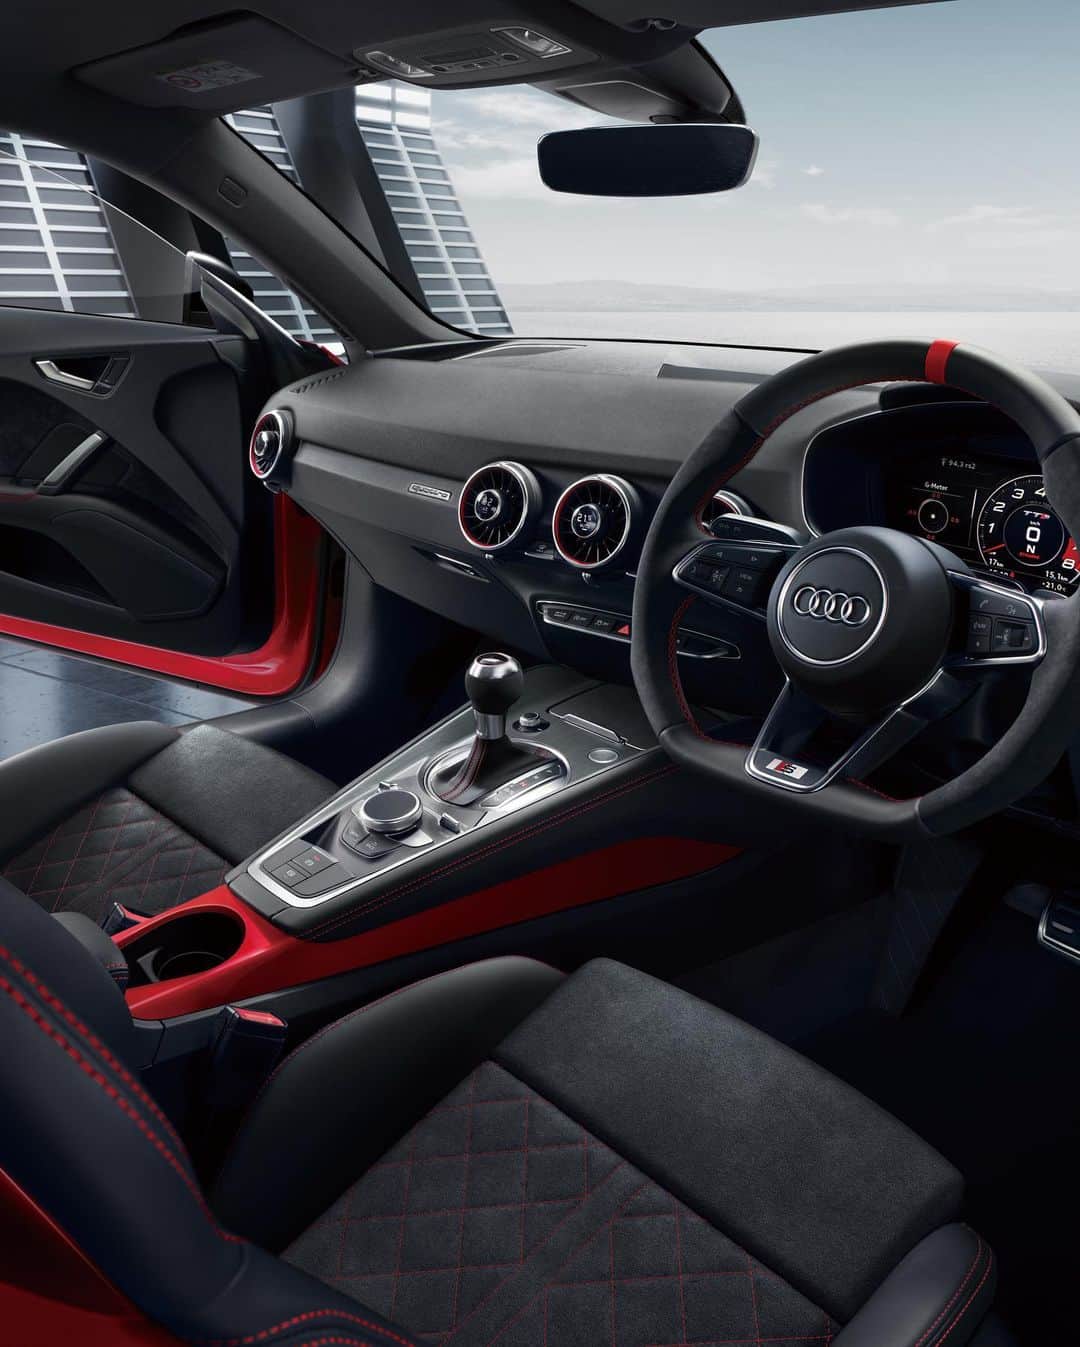 アウディ ジャパンのインスタグラム：「Audi TT Coupé final editionの室内は、初代Audi TTから連綿と受け継がれるドライビングに集中するための場所。   ビビッドなアクセントカラーを施したインテリアは、スポーティな雰囲気と大人な感性を満たす質感の高さや快適性が絶妙に調和。 乗り込んだ瞬間から心躍る空間を創り出すその場所は、歴史を締めくくるにふさわしい。   *写真は欧州仕様車です。日本仕様と異なります。   #AudiTTCoupe   #Audi #アウディ #AudiJapan #アウディジャパン #AudiSport #アウディスポーツ #AudiTT #アウディTT #限定車 #SportsCar #スポーツカー #AudiLife #Audigram #CarLife #CarLifeStyle #GermanCars #Car #Cars #Cargram #アウディのある生活 #アウディのある風景」